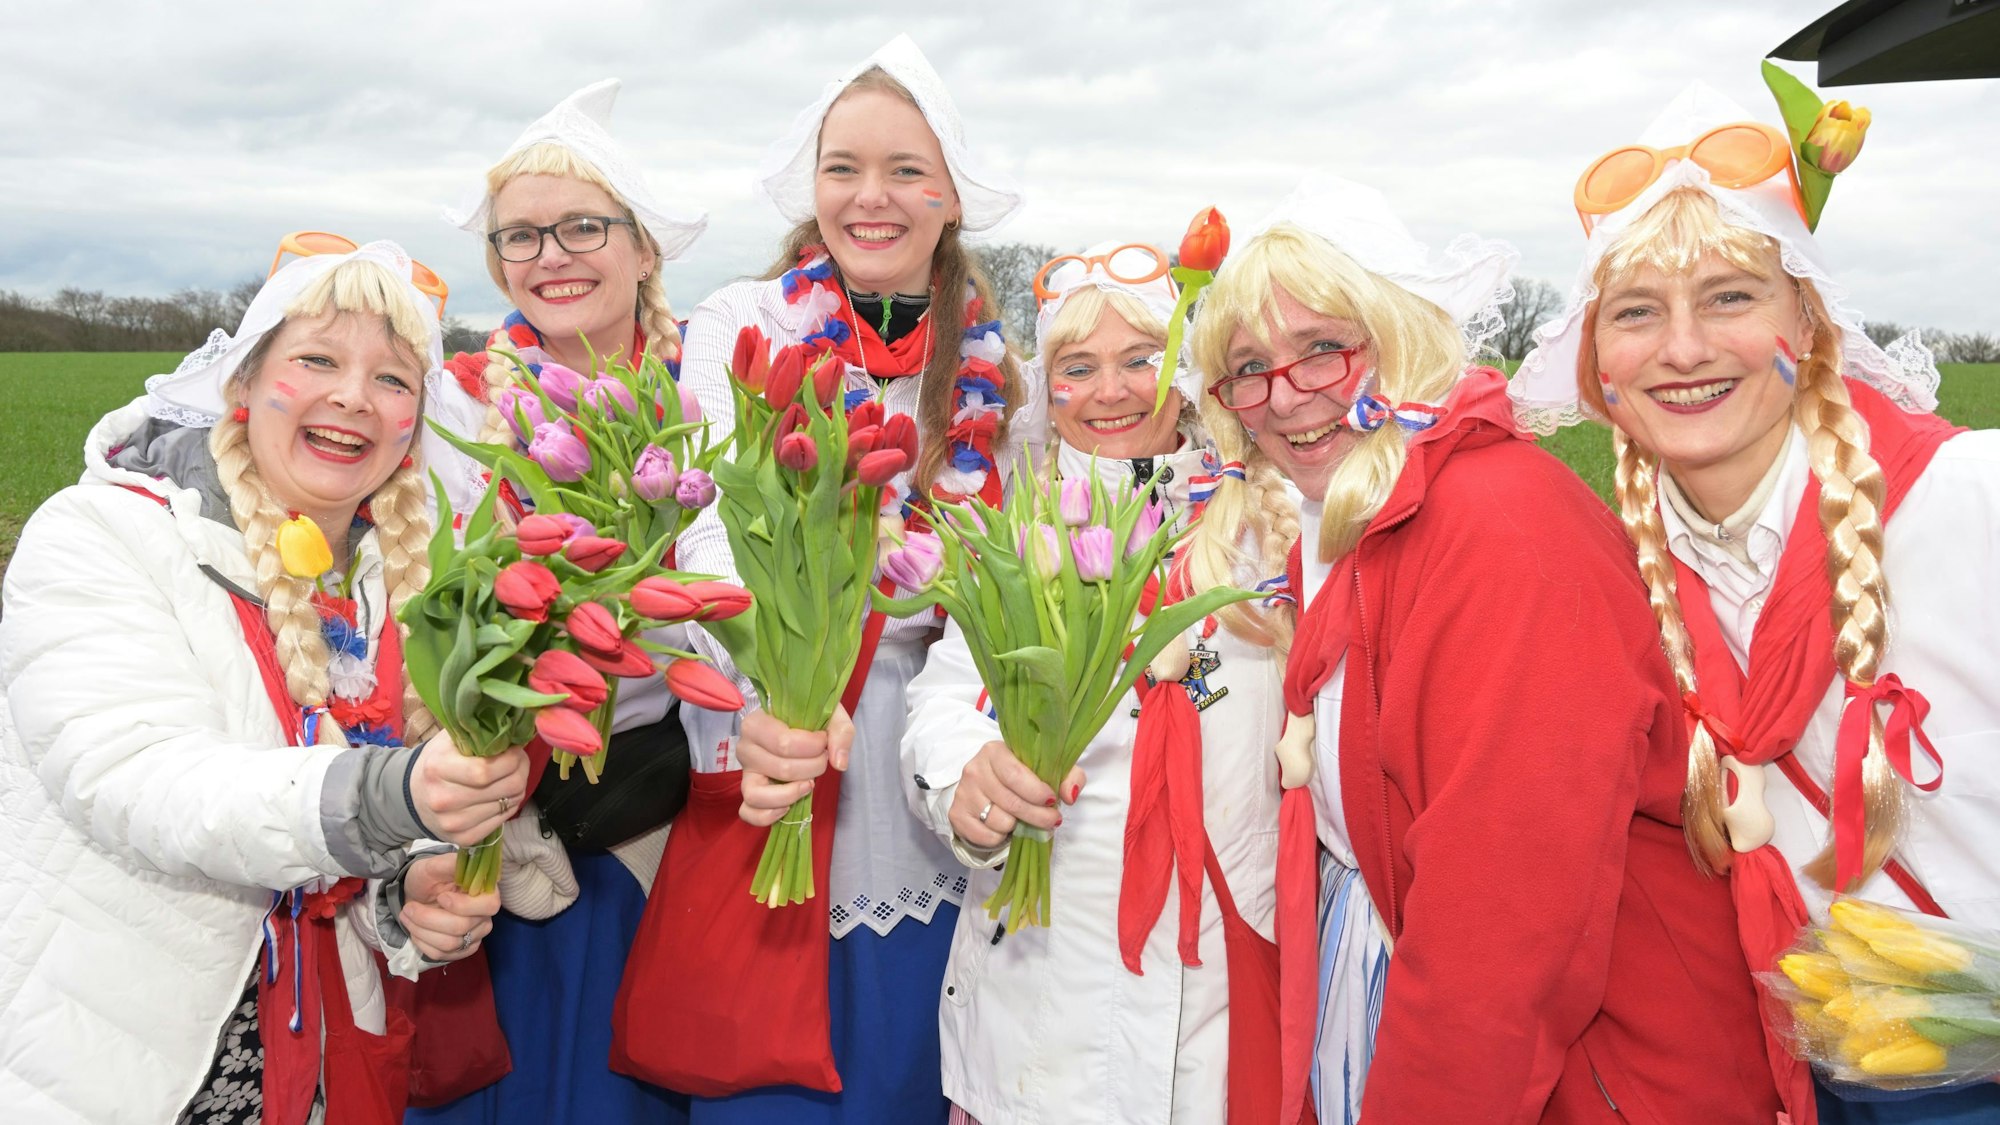 Karnevalszug-Voiswinkel, Gruppe von Holländerinnen mit Tulpen.